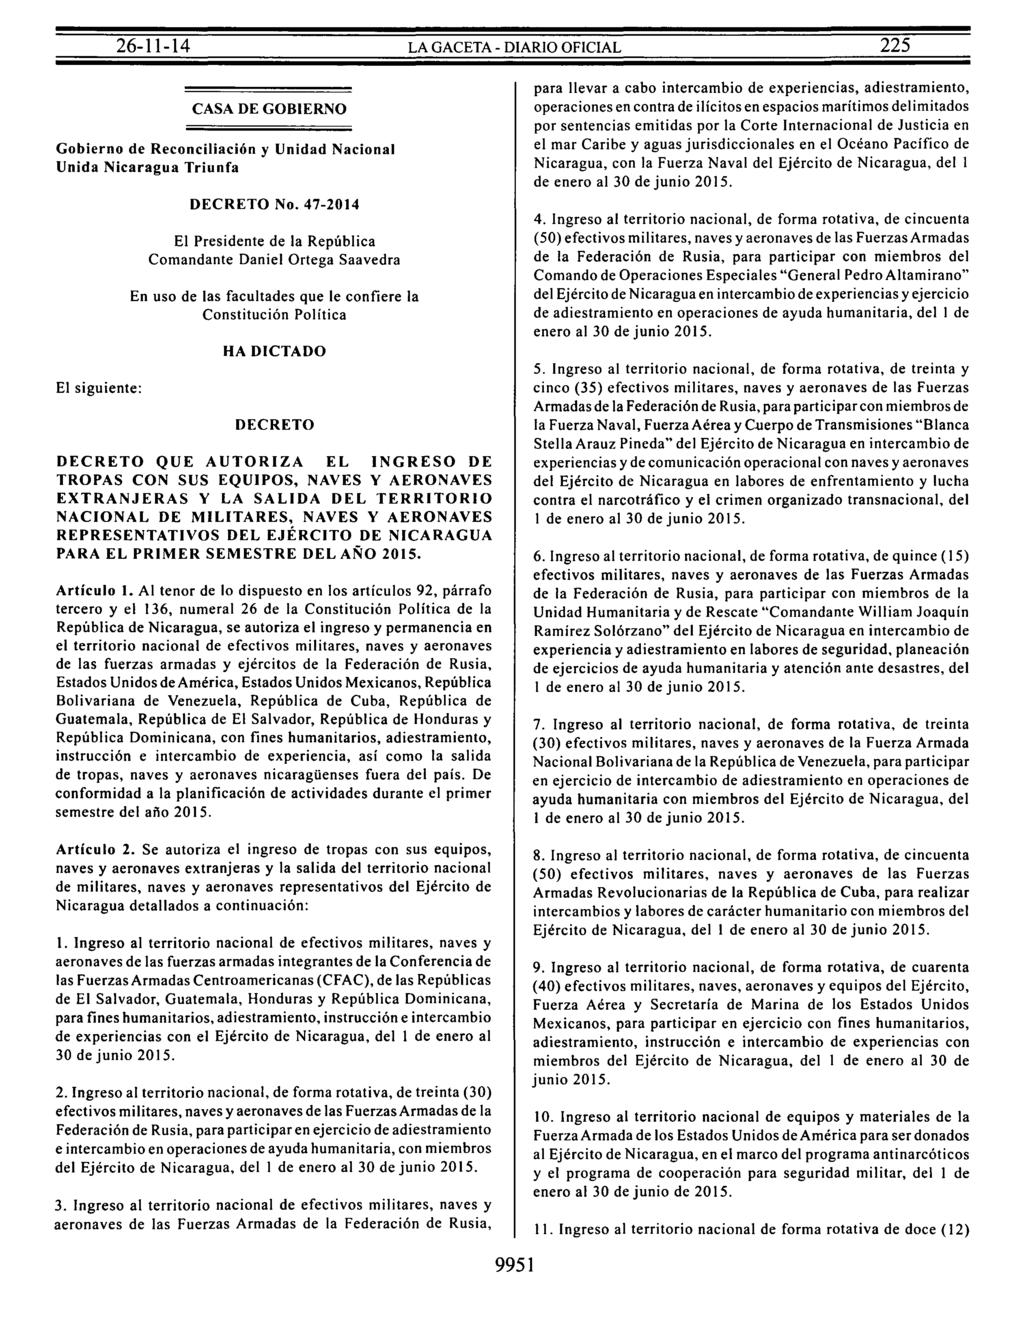 CASA DE GOBIERNO Gobierno de Reconciliación y Unidad Nacional Unida Nicaragua Triunfa El siguiente: DECRETO No.